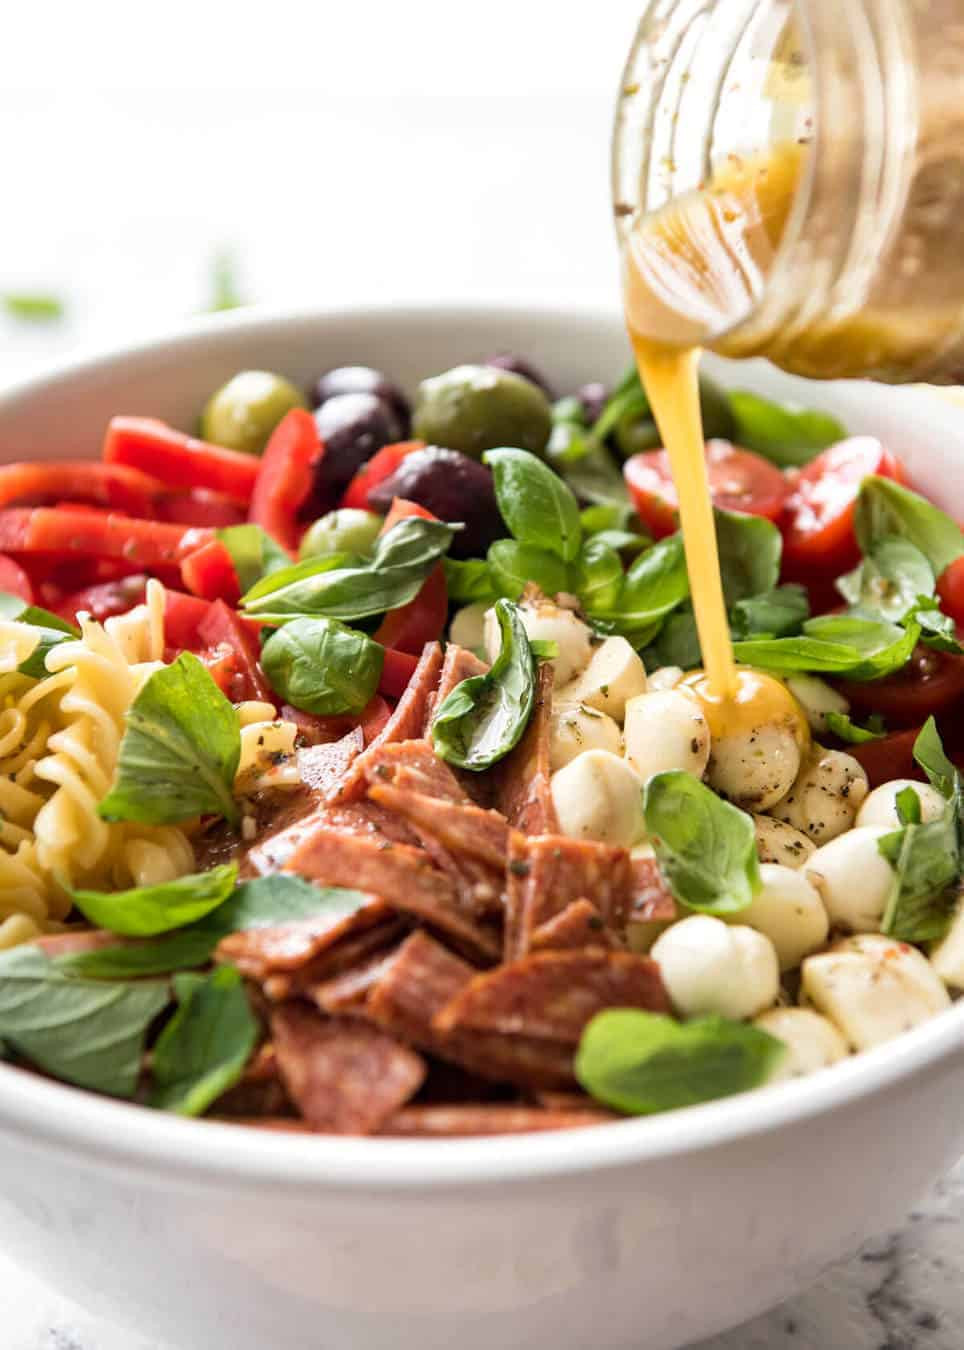 Italian Dressing Recipes
 Italian Pasta Salad with Homemade Italian Dressing